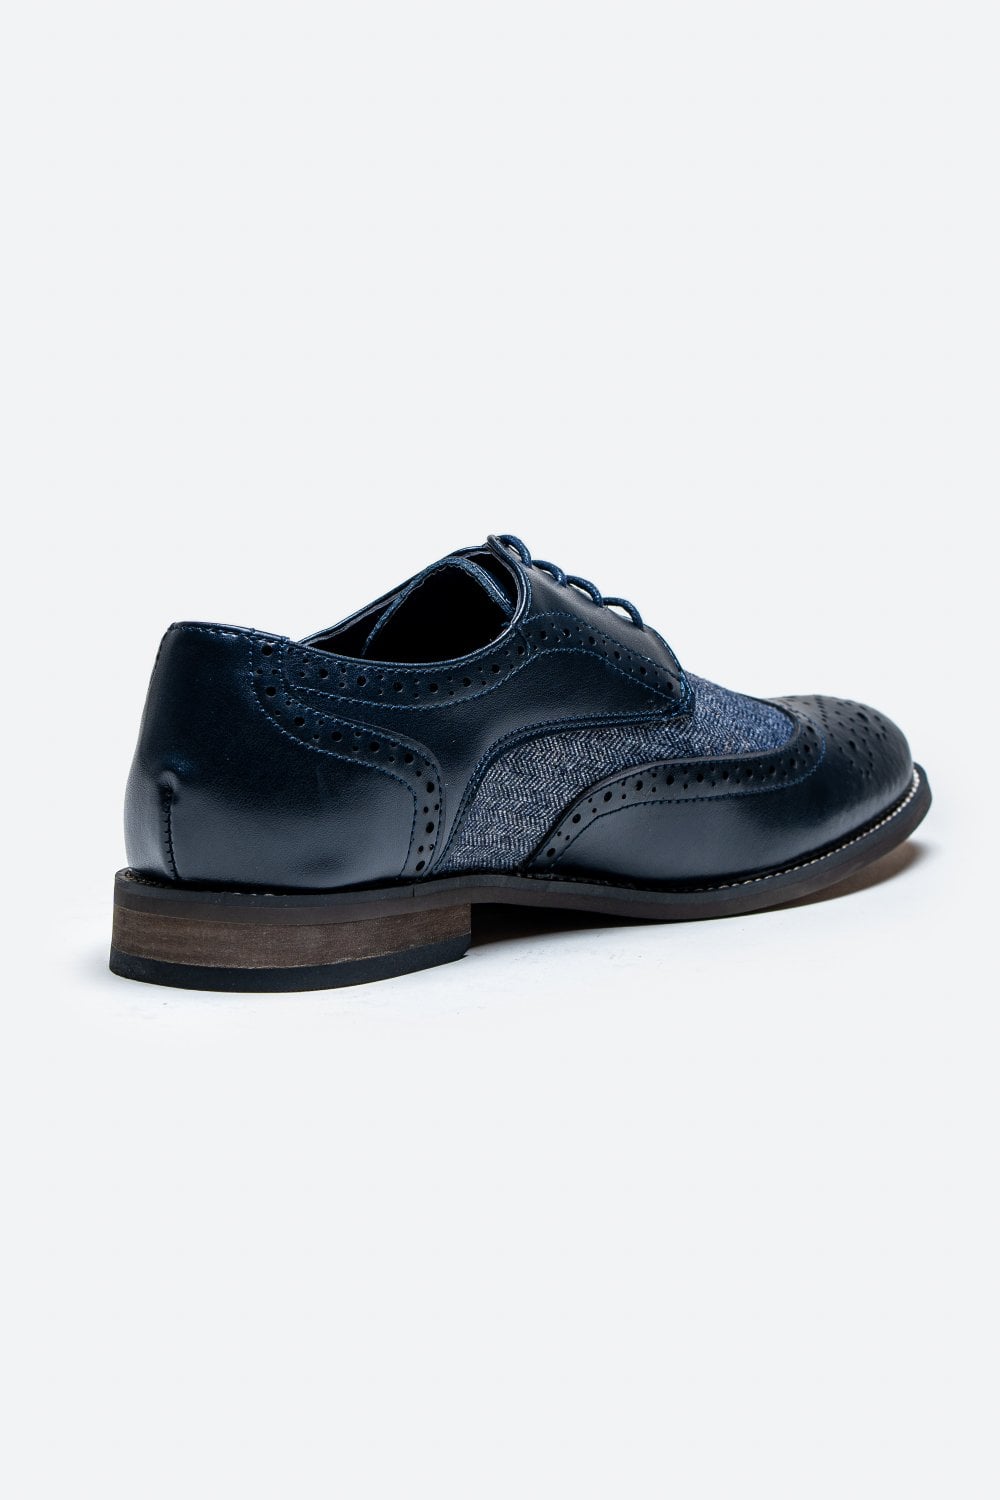 Cavani Oliver Schuhe Navy - Tweed - schoenen